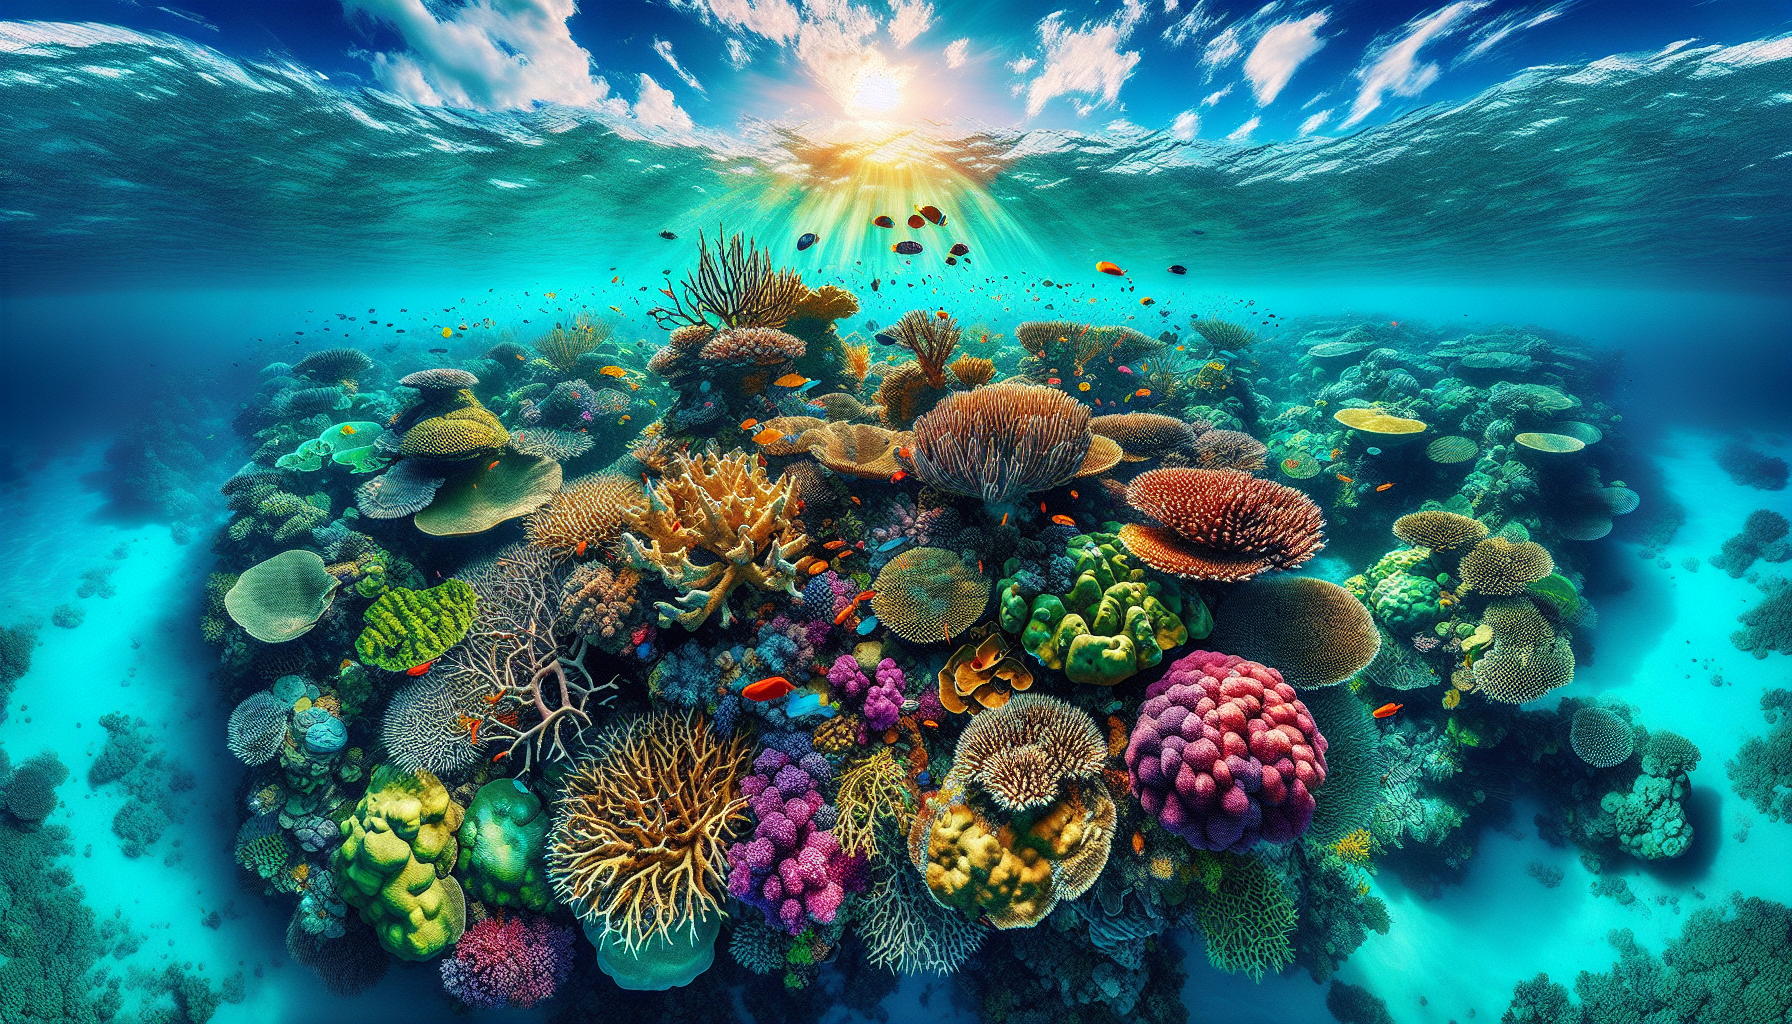 San hô Great Barrier Reef ở Australia với hơn 2.900 cái rạn san hô và là một trong những di sản thiên nhiên thế giới.